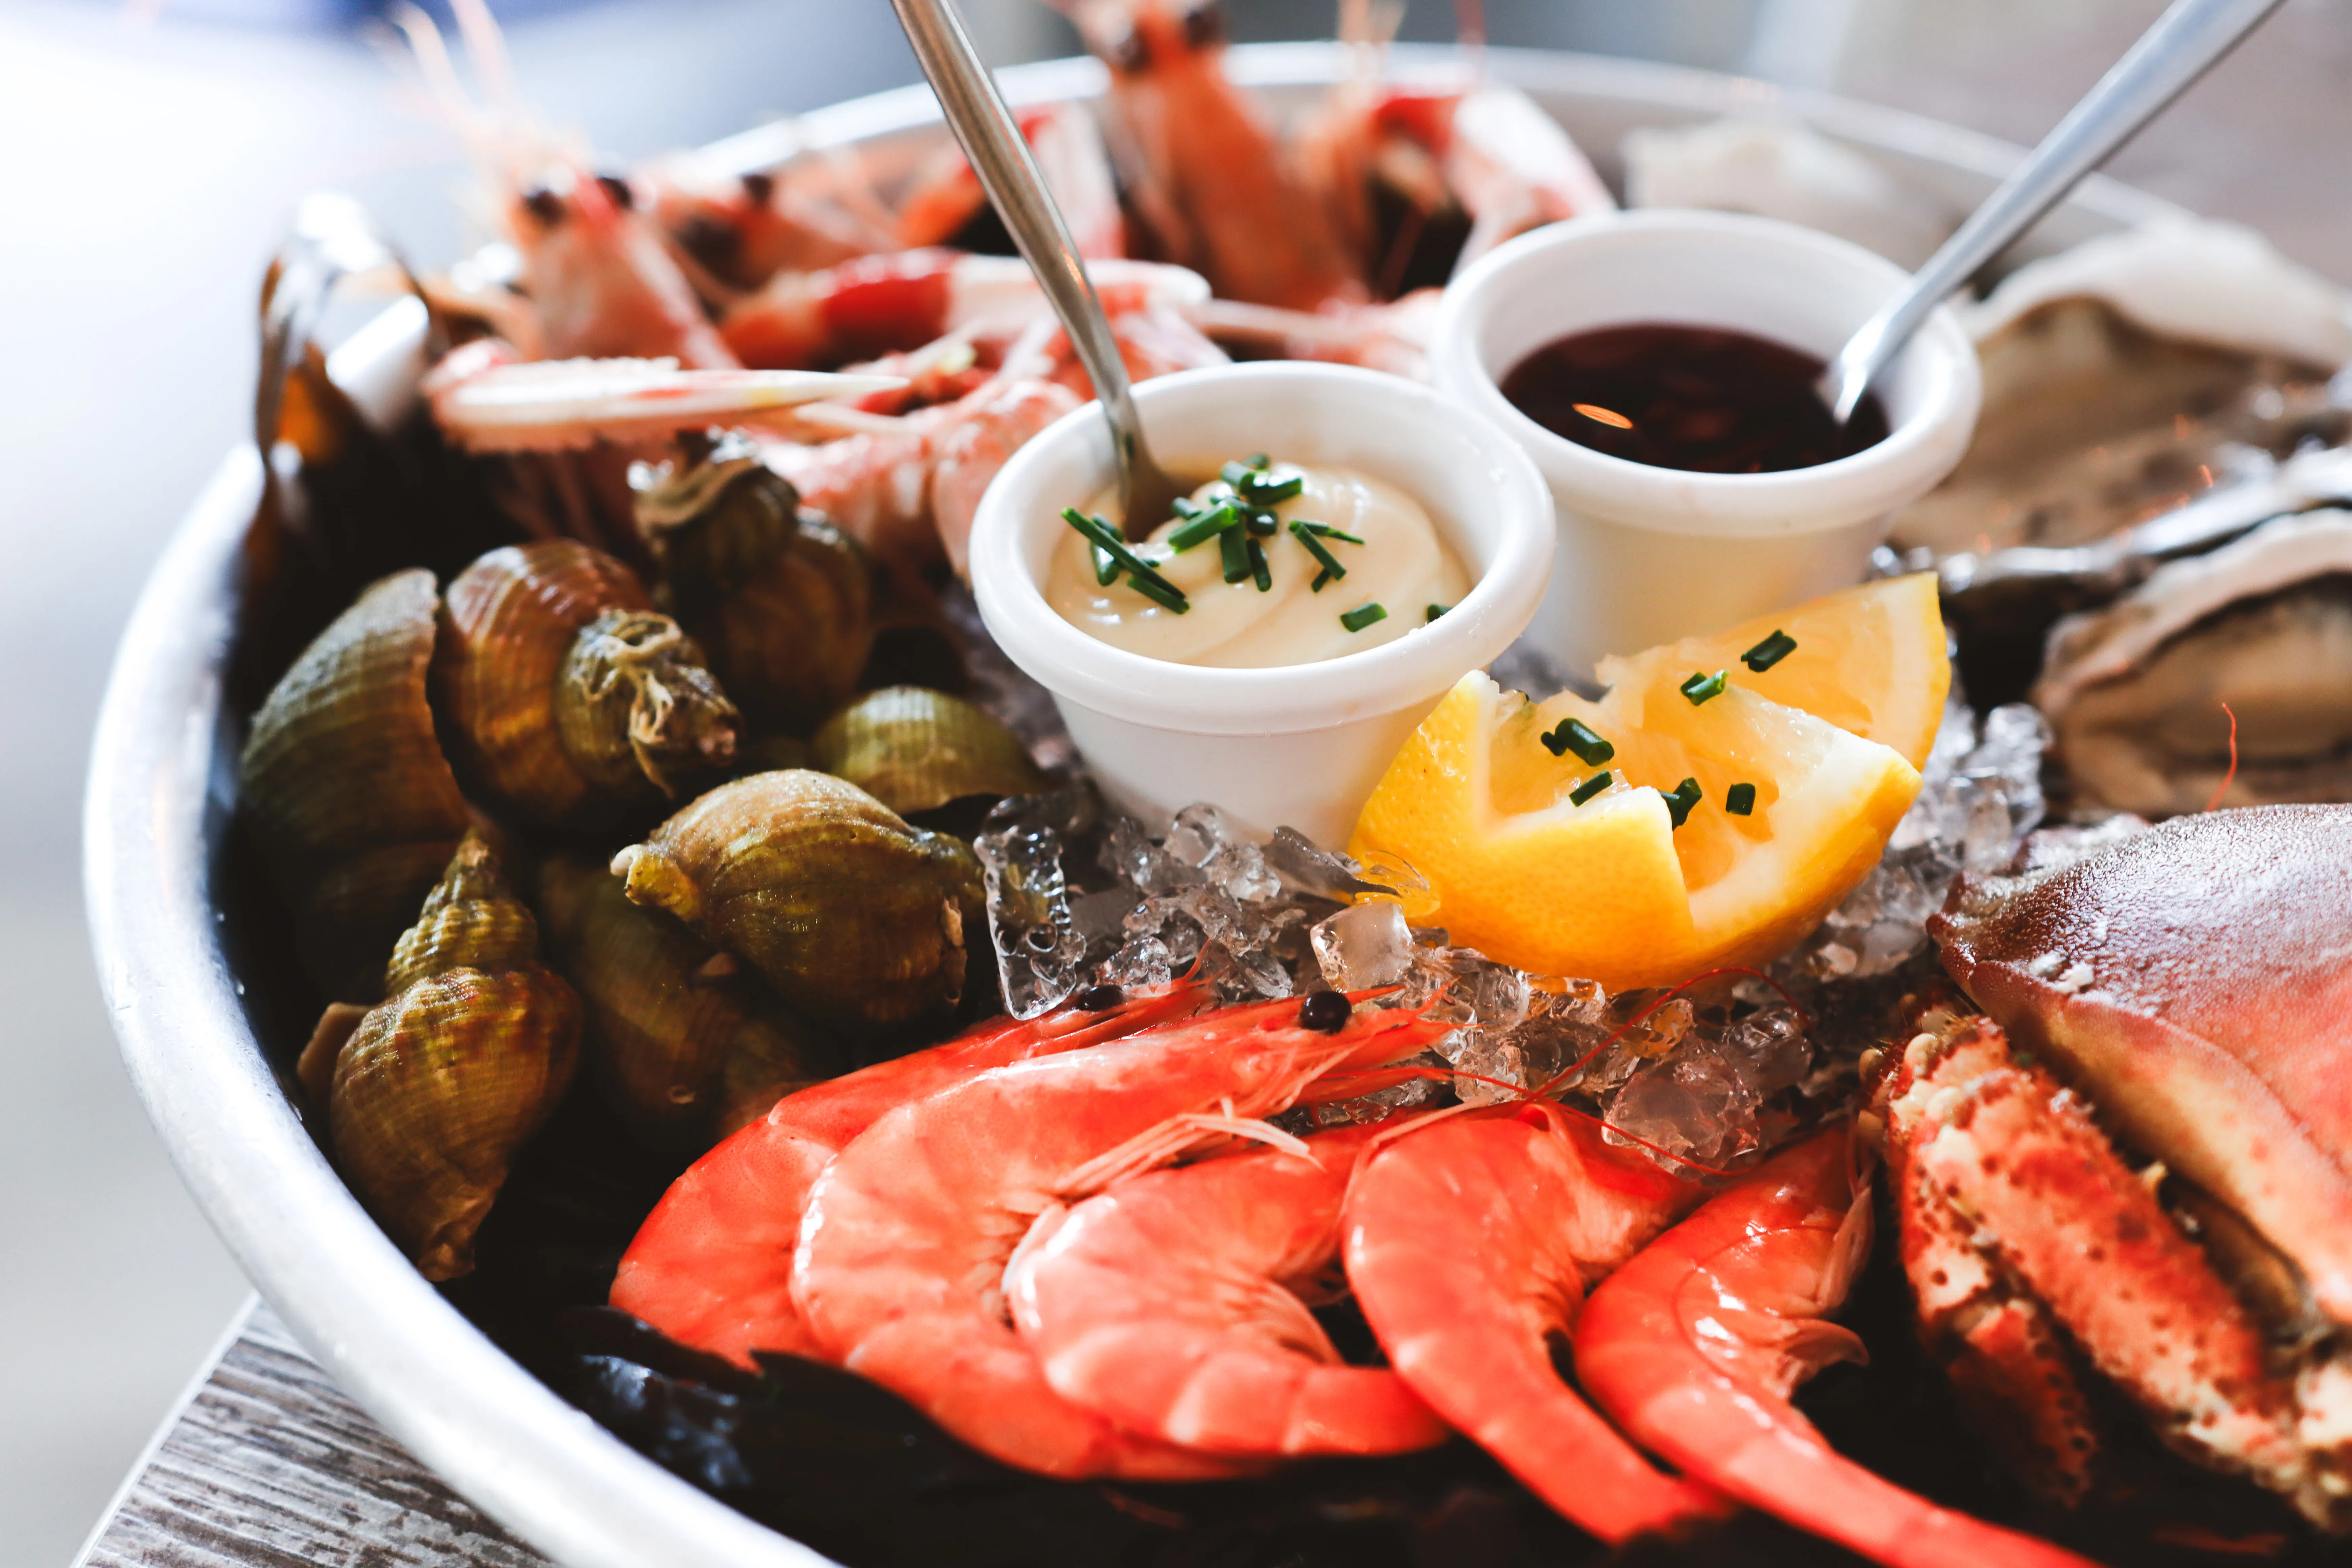 Image assiette de fruits de mer : crevettes, huîtres, mollusques et crabe.